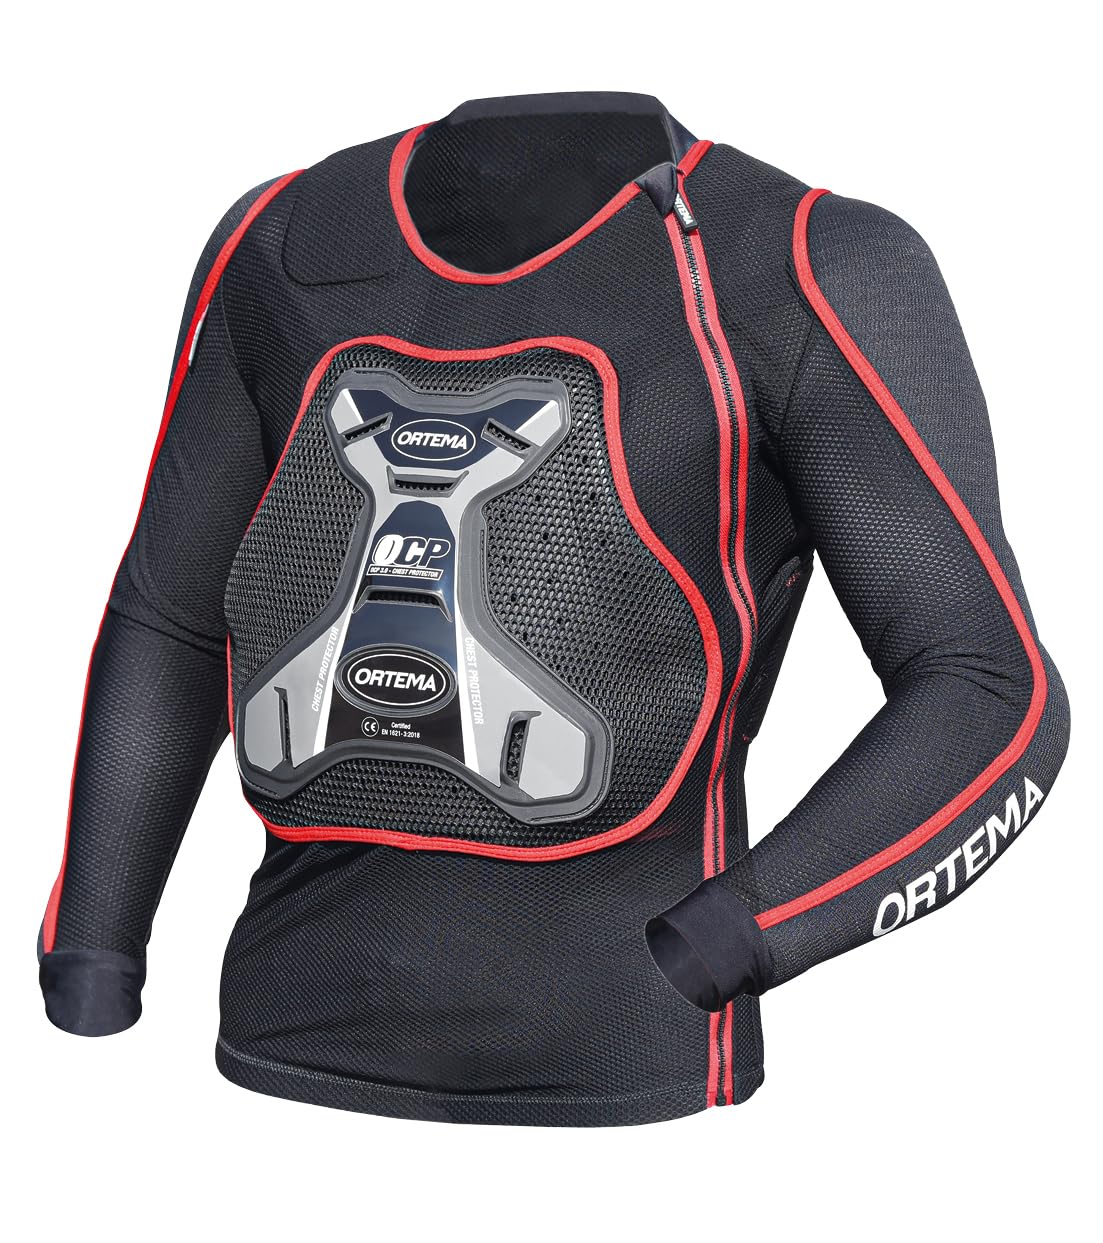 ORTEMA ORTHO-MAX Jacket DUO - Protektorenjacke für den optimalen Rundumschutz - Schützt die Wirbelsäule, Brust, Schultern und Ellenbogen - Motocross/Enduro (M) von ORTEMA